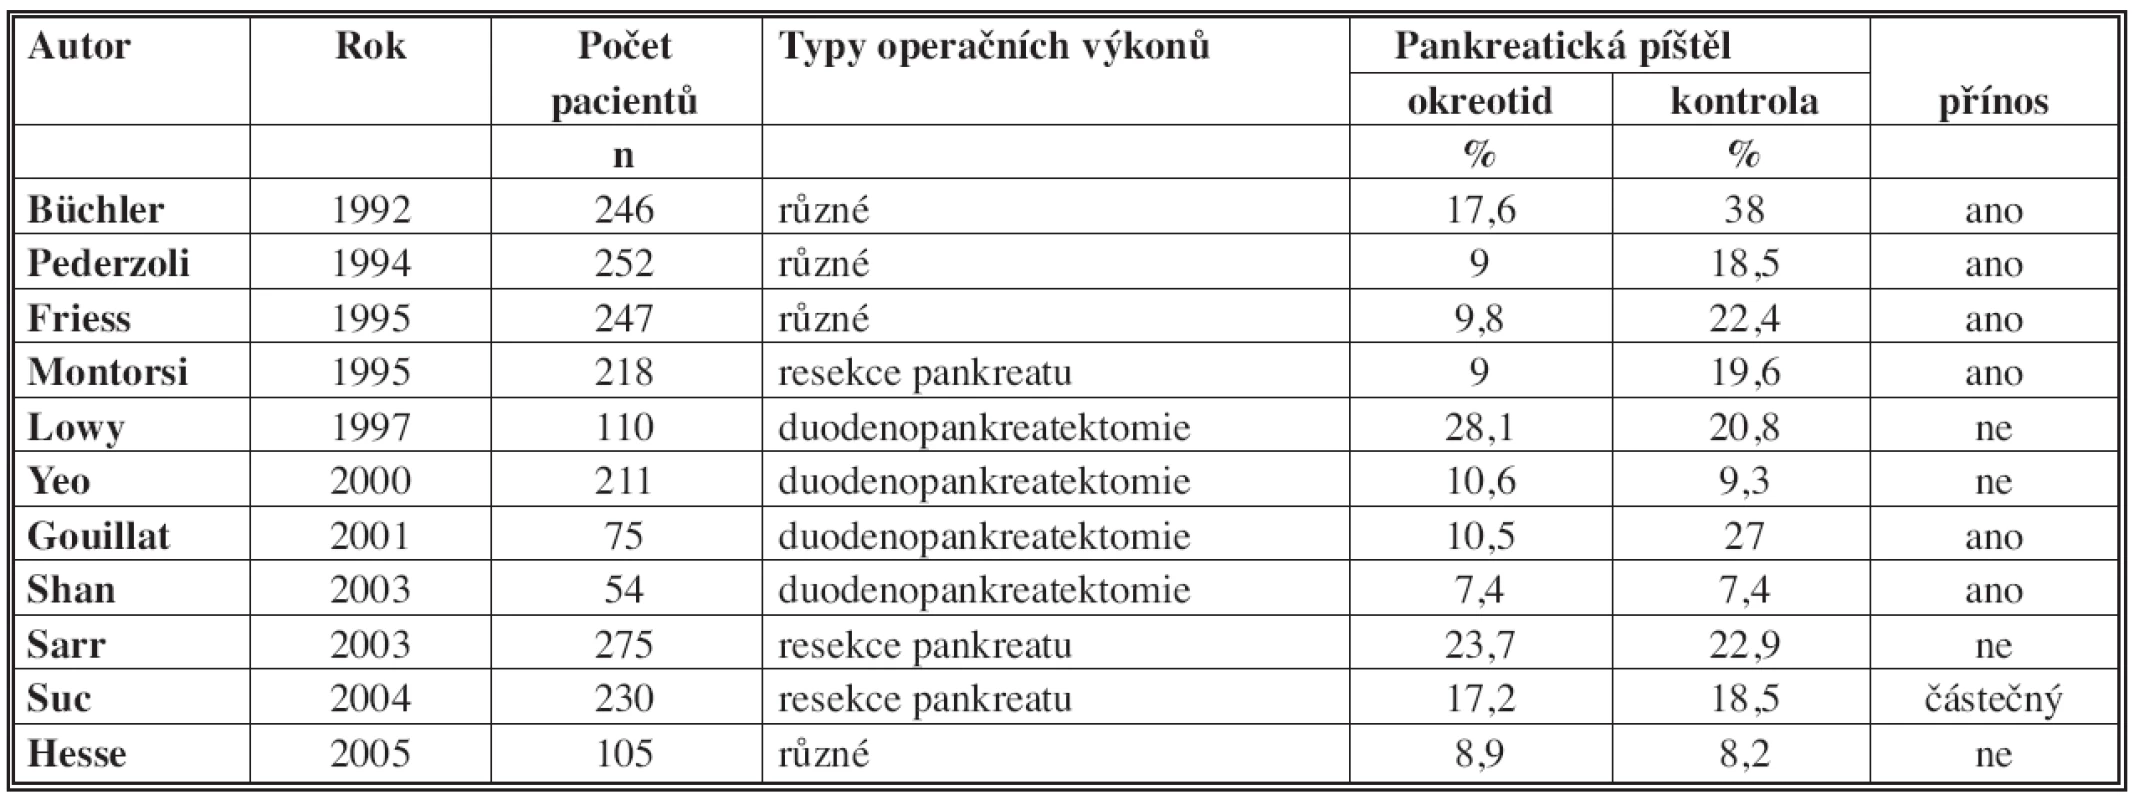 Výsledky randomizovaných studií testování oktreotidu ke snížení frekvence pankreatické píštěle
Tab. 3: The results of randomized trials testing octreotide to reduce the frequency of pancreatic fistula